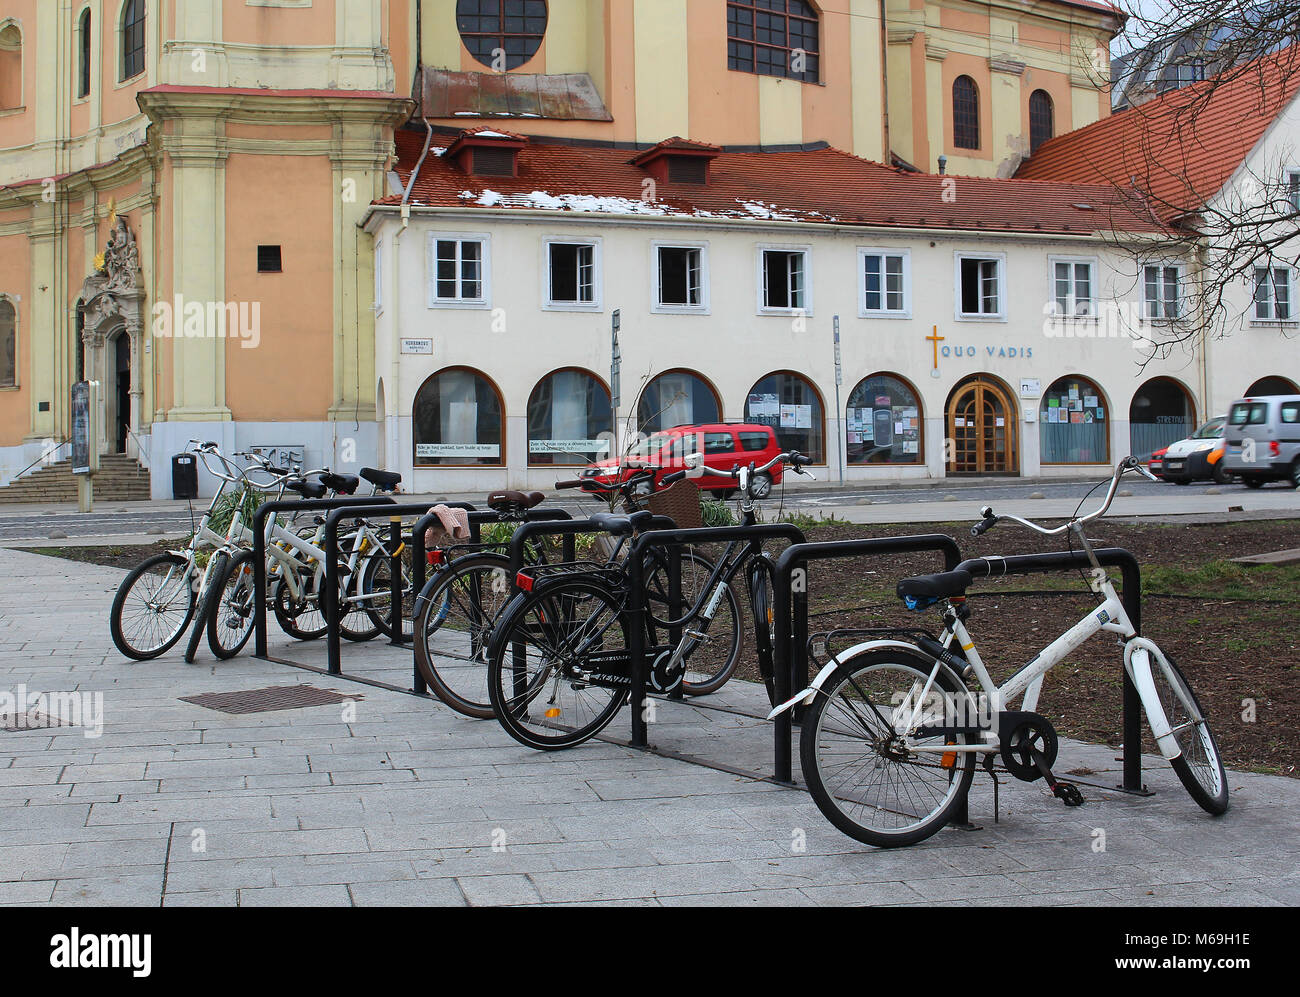 Gesundes Leben Stil - Transport in der Stadt - Fahrräder im historischen Zentrum von Bratislava, Slowakei geparkt, Mitteleuropa Stockfoto